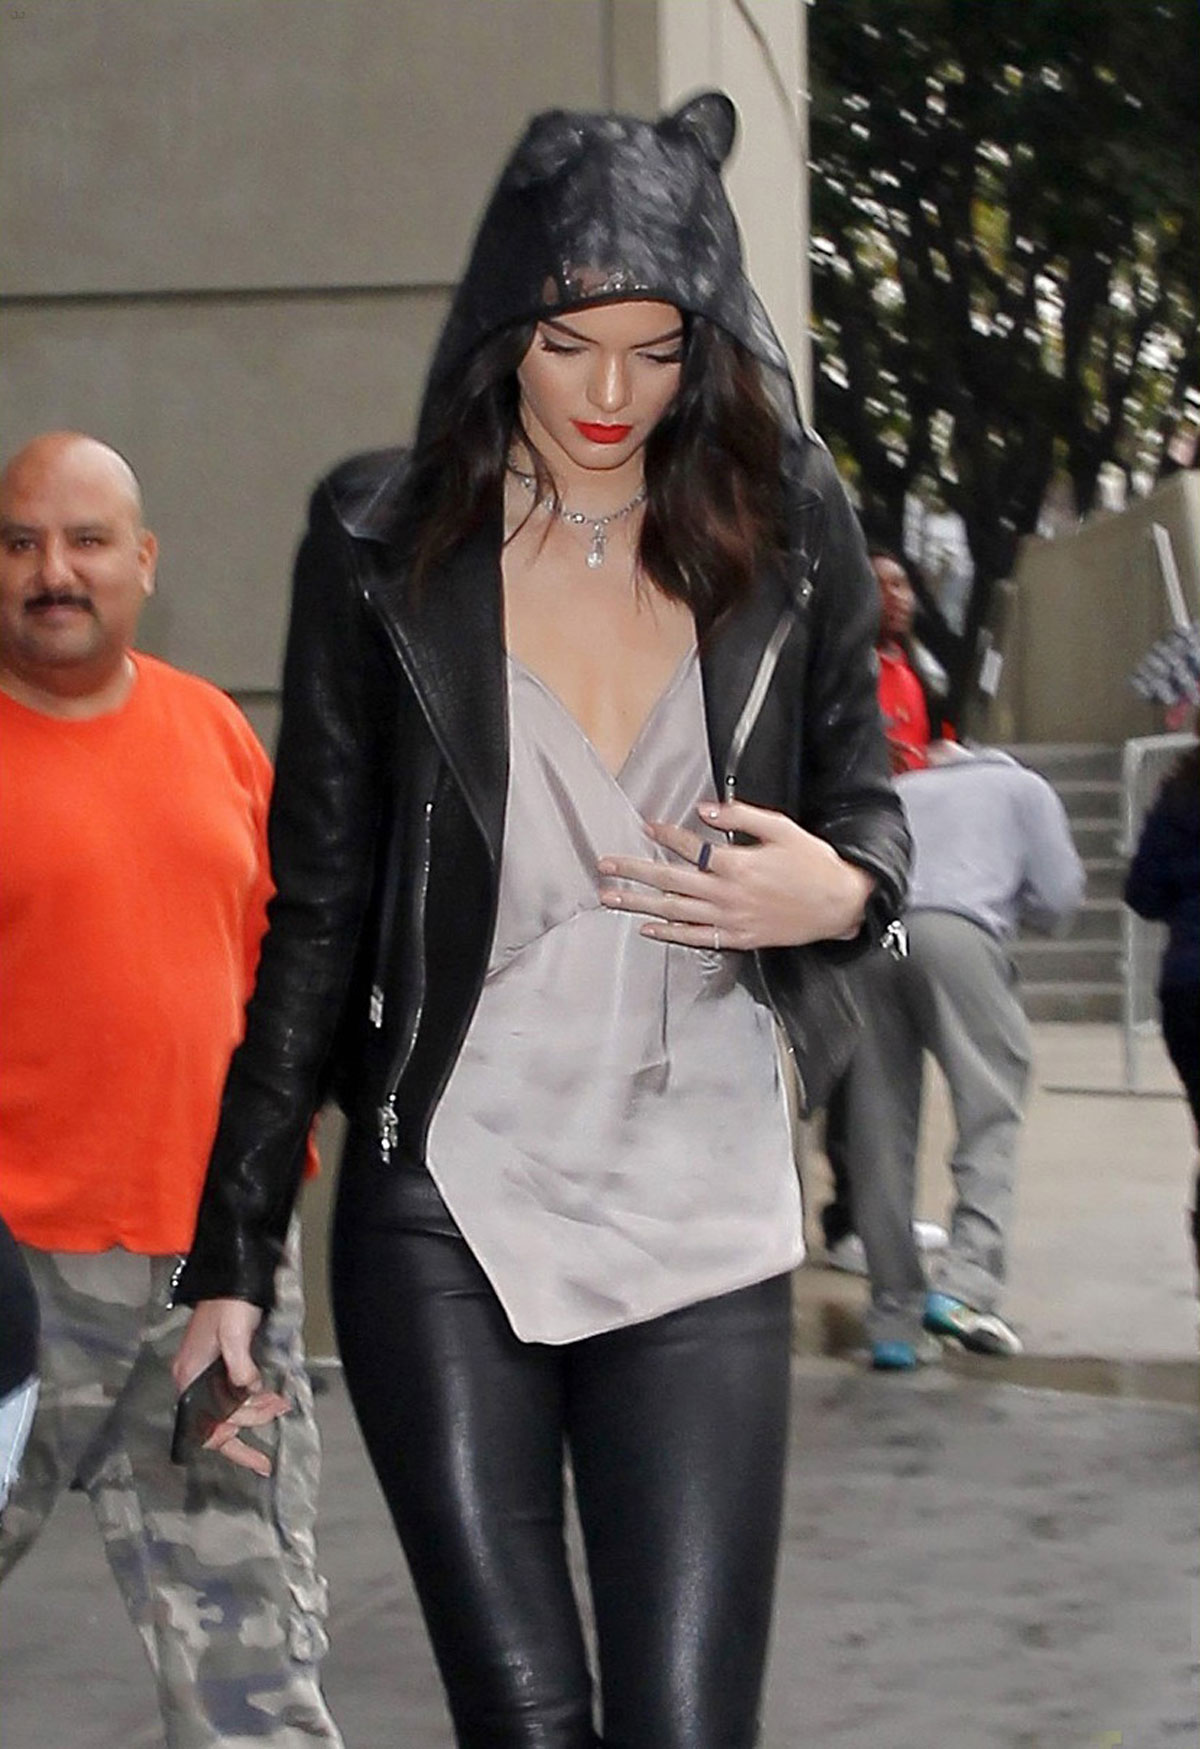 Kendall Jenner & Khloe Kardashian leave the Staples Center